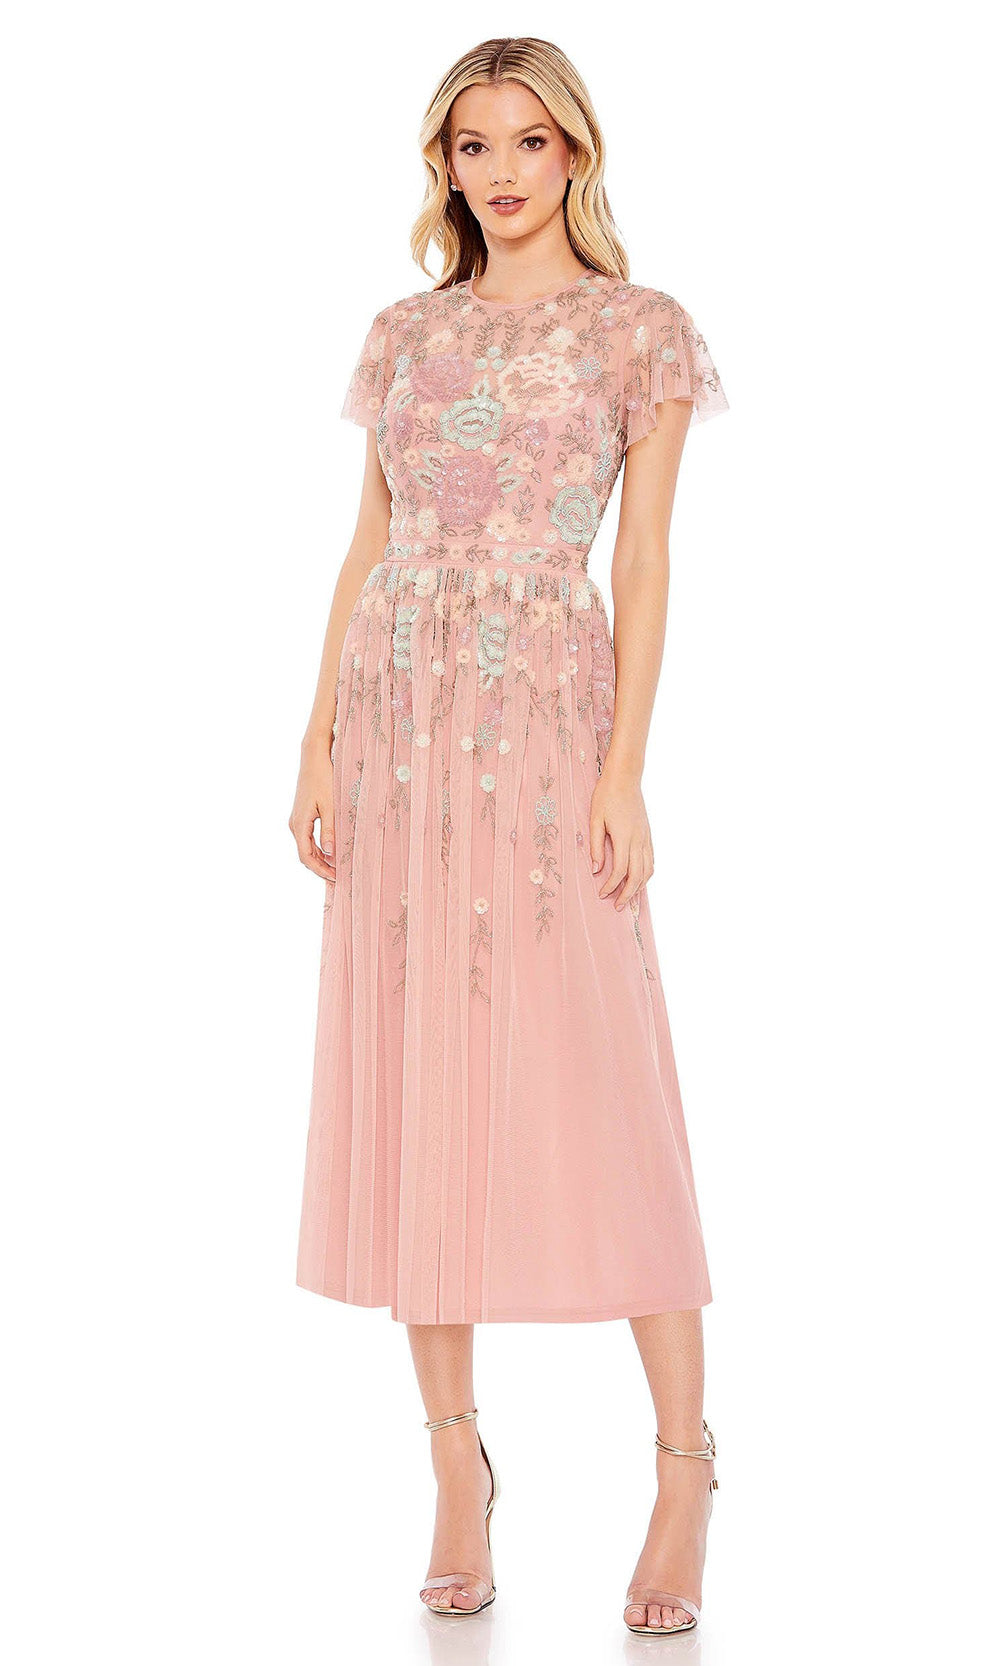 Mac Duggal - 9134 Short Sleeve Floral Embellished Dress In Pinkgrade 8 grad dresses, graduation dresses